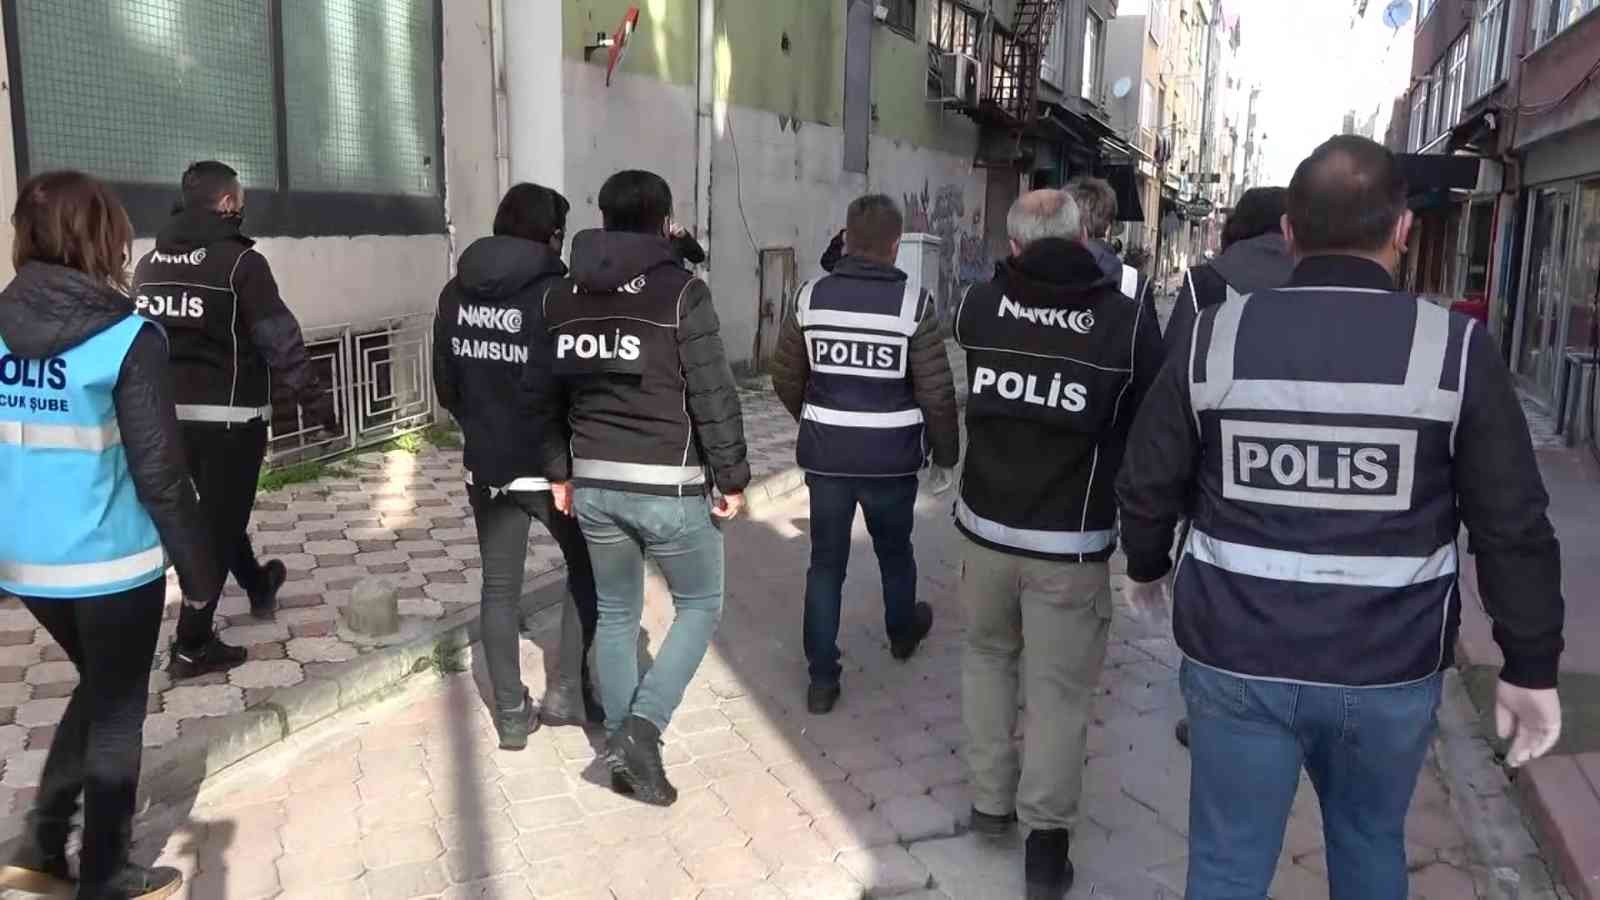 Samsun polisinden okul çevrelerinde uyuşturucuya geçit yok #samsun